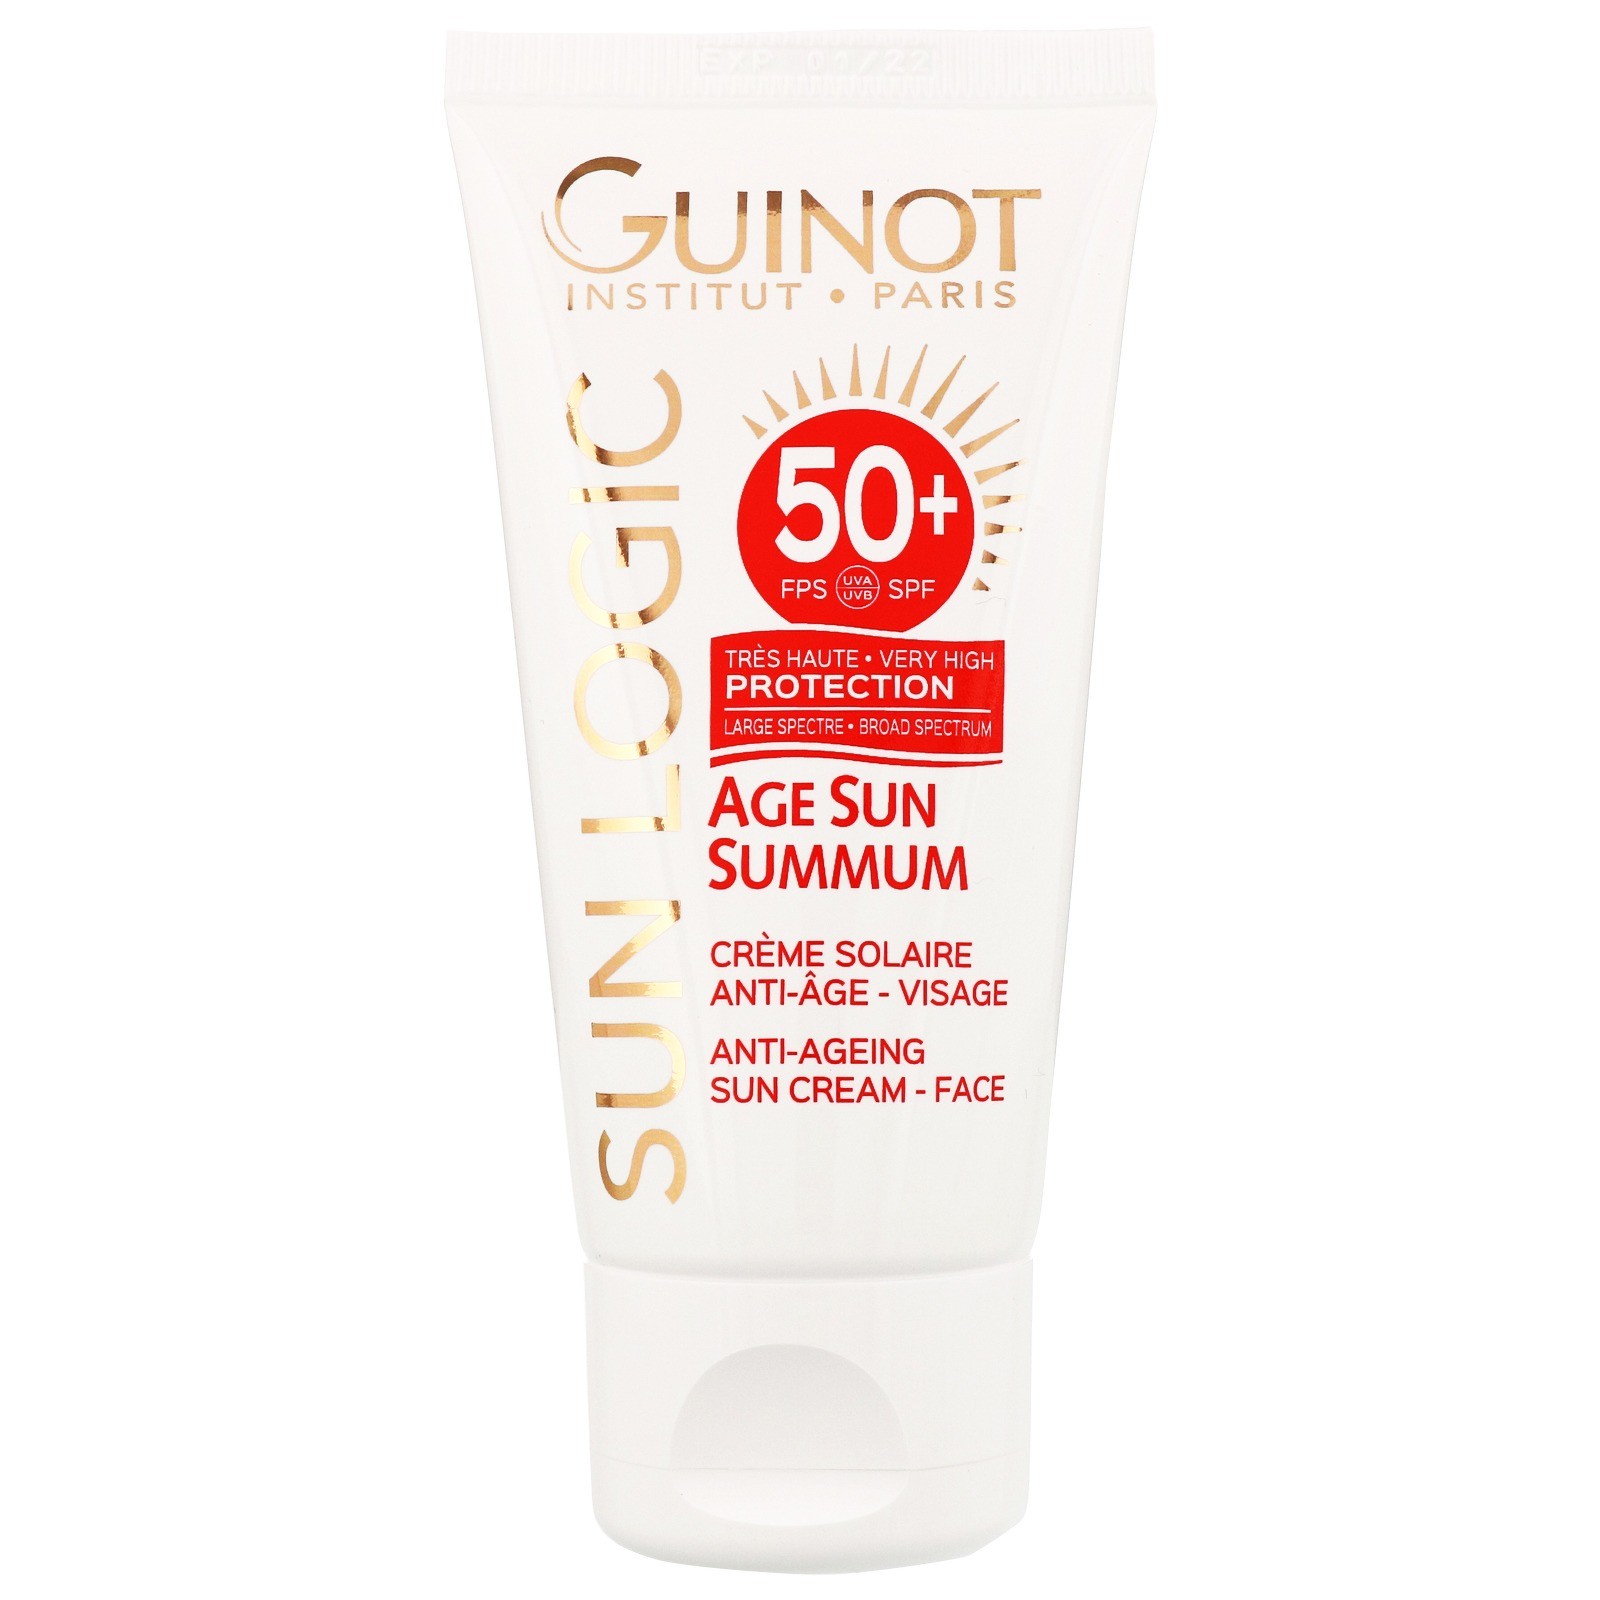 Guinot Age Sun Summum